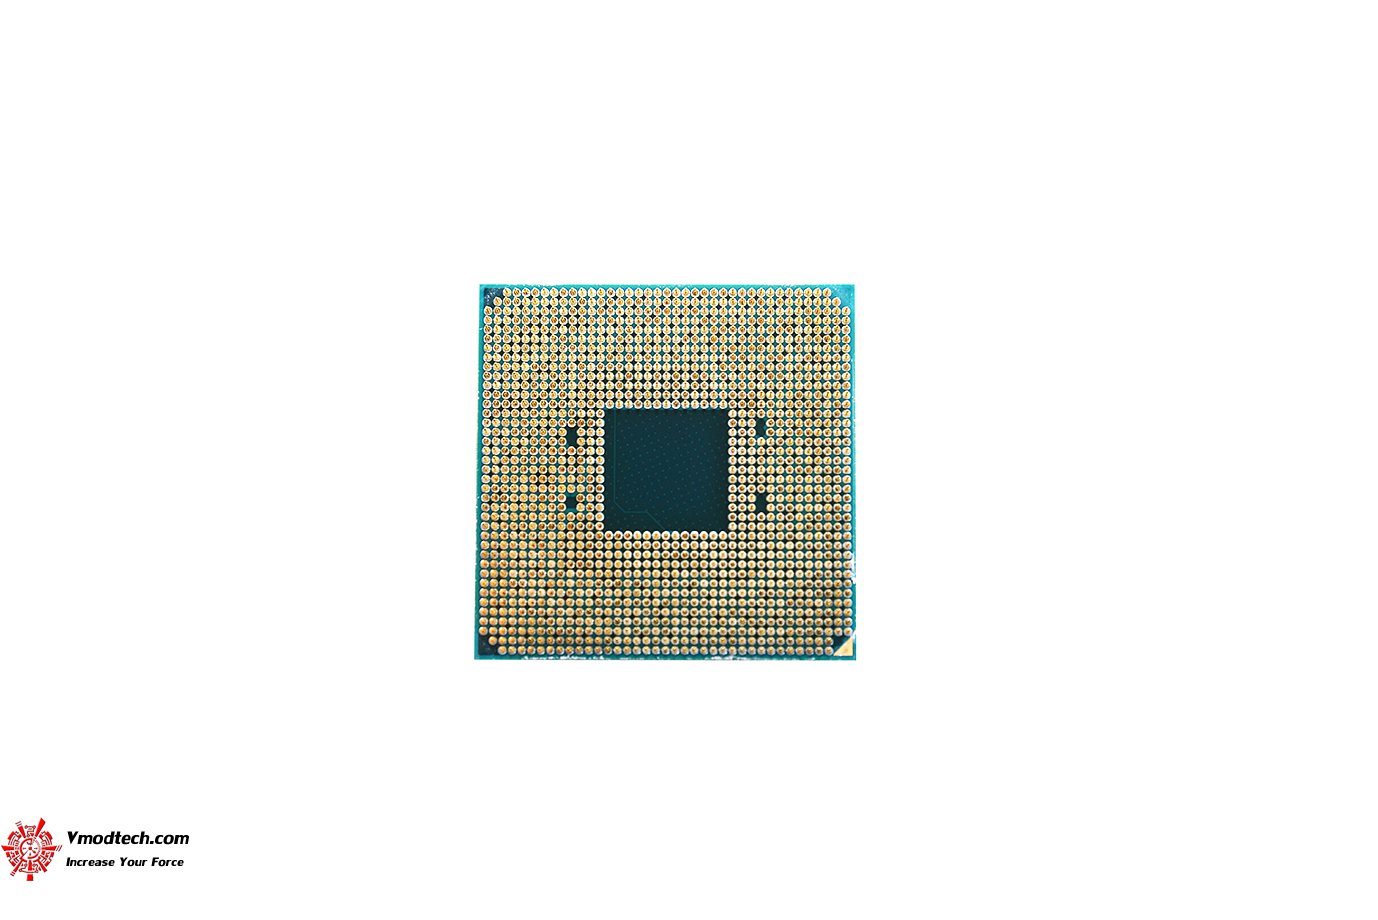 dsc 0977 AMD RYZEN 5 2600X PROCESSOR REVIEW